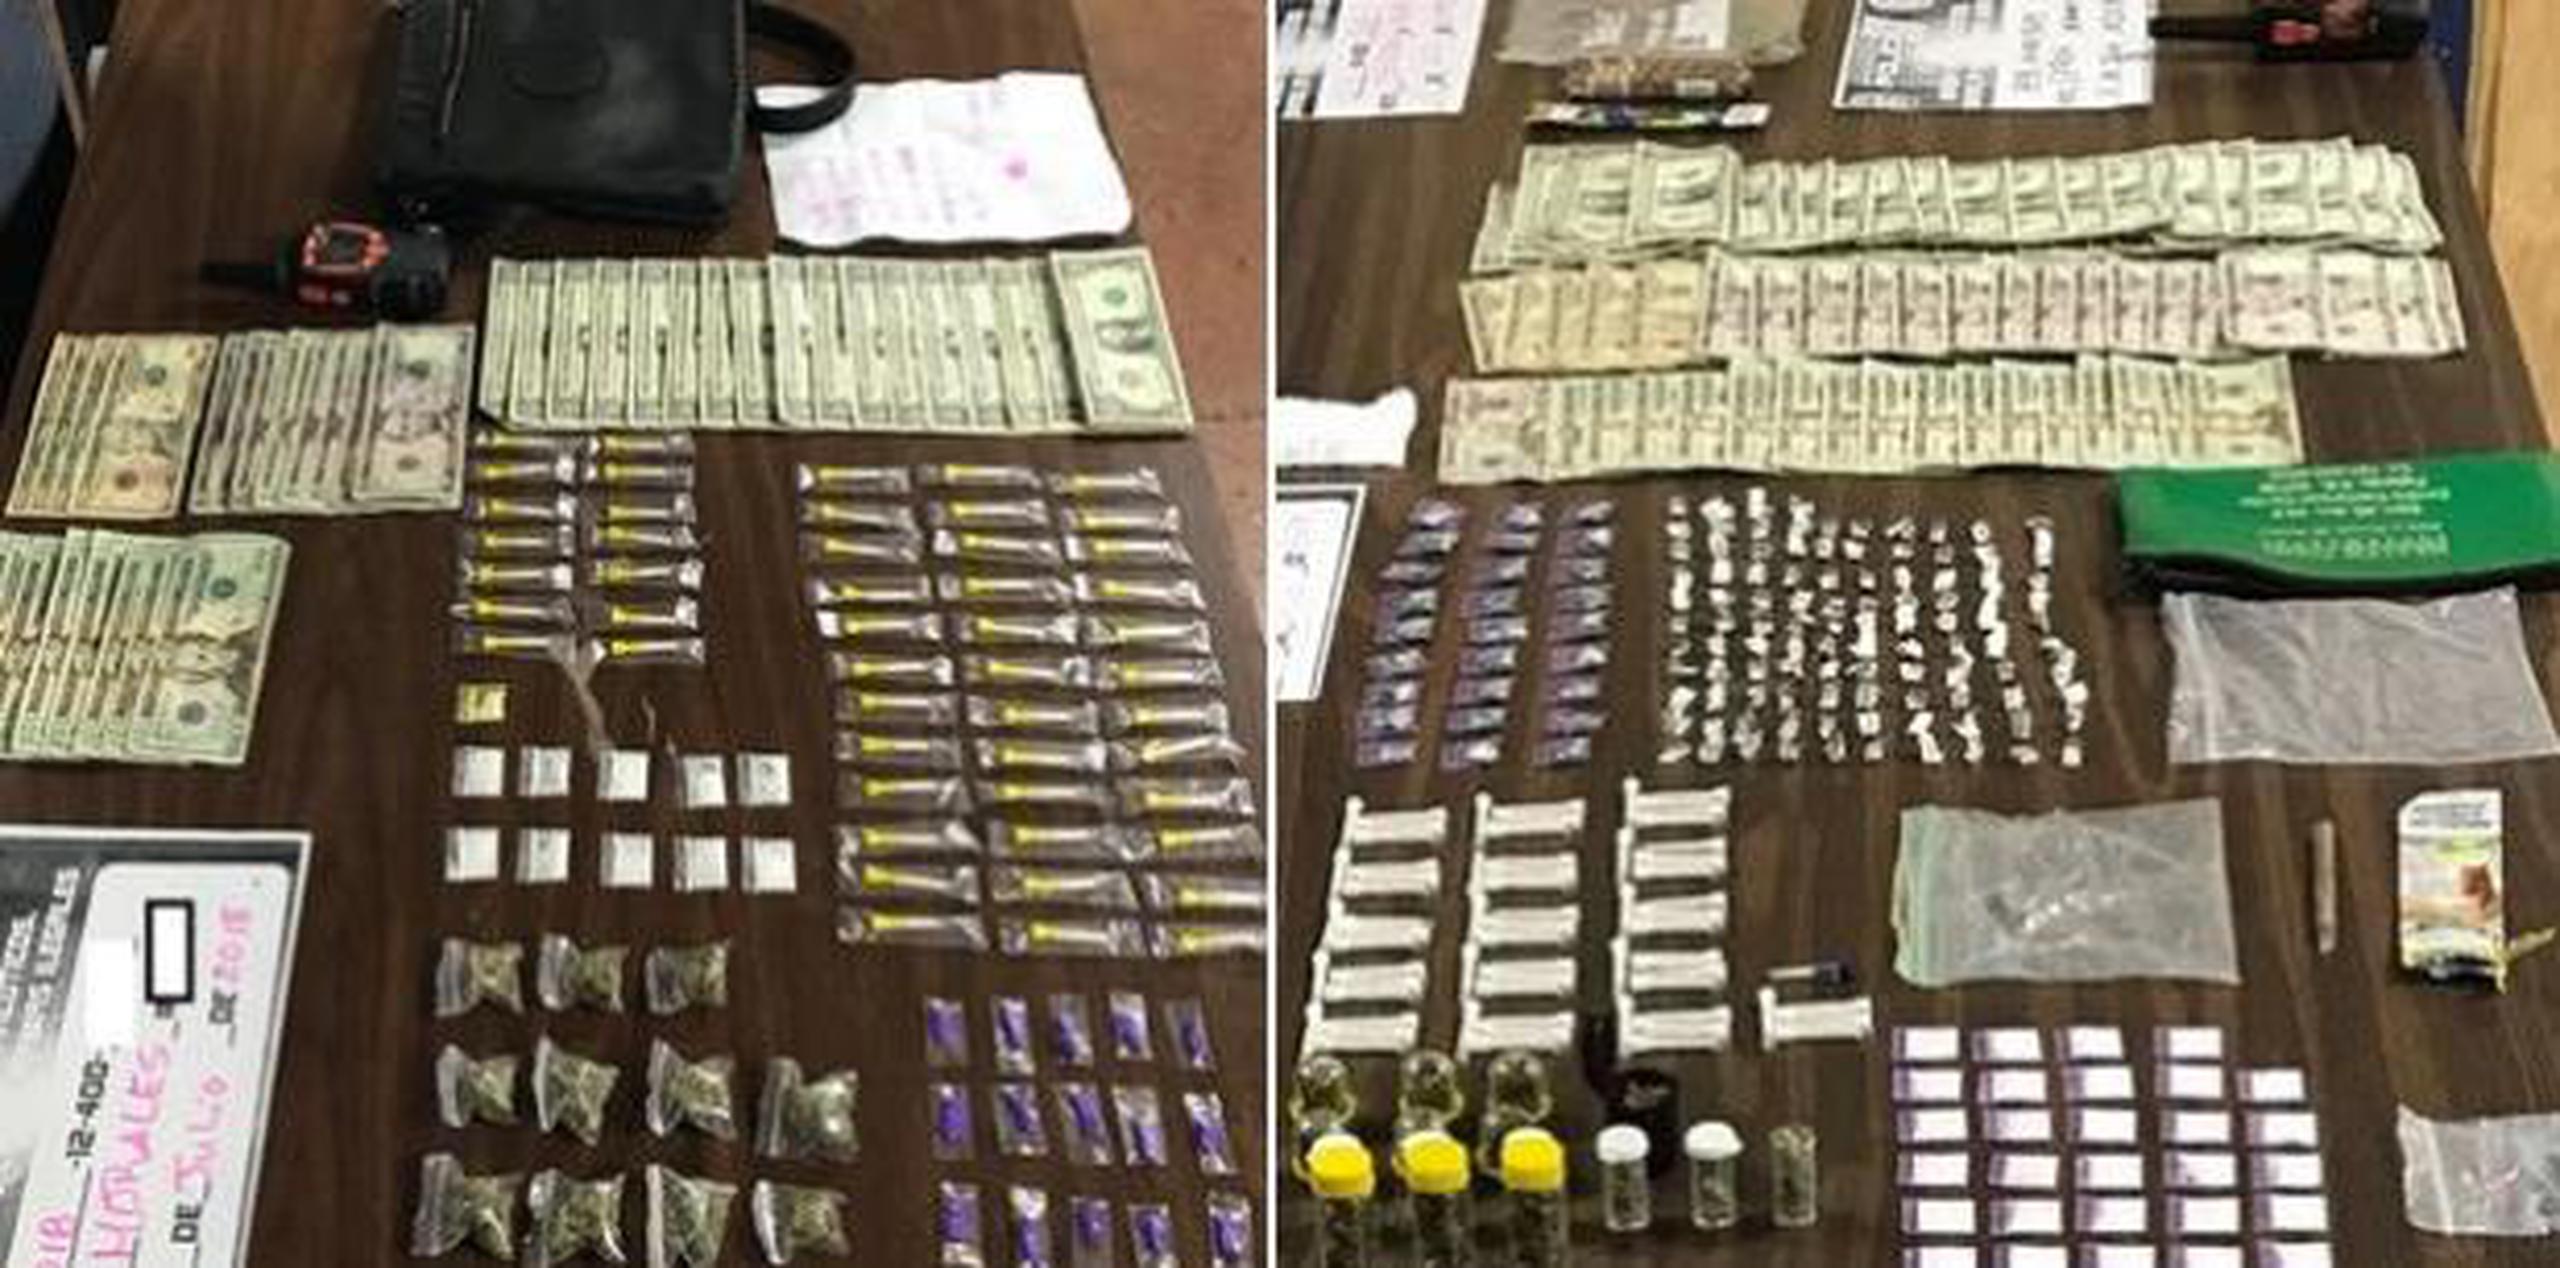 Al grupo le ocuparon 131 cápsulas de crack, 39 bolsas de cocaína, 21 envases cilíndricos con marihuana, 12 bolsas de marihuana, 146 decks de heroína y $828 en efectivo. (Suministradas)